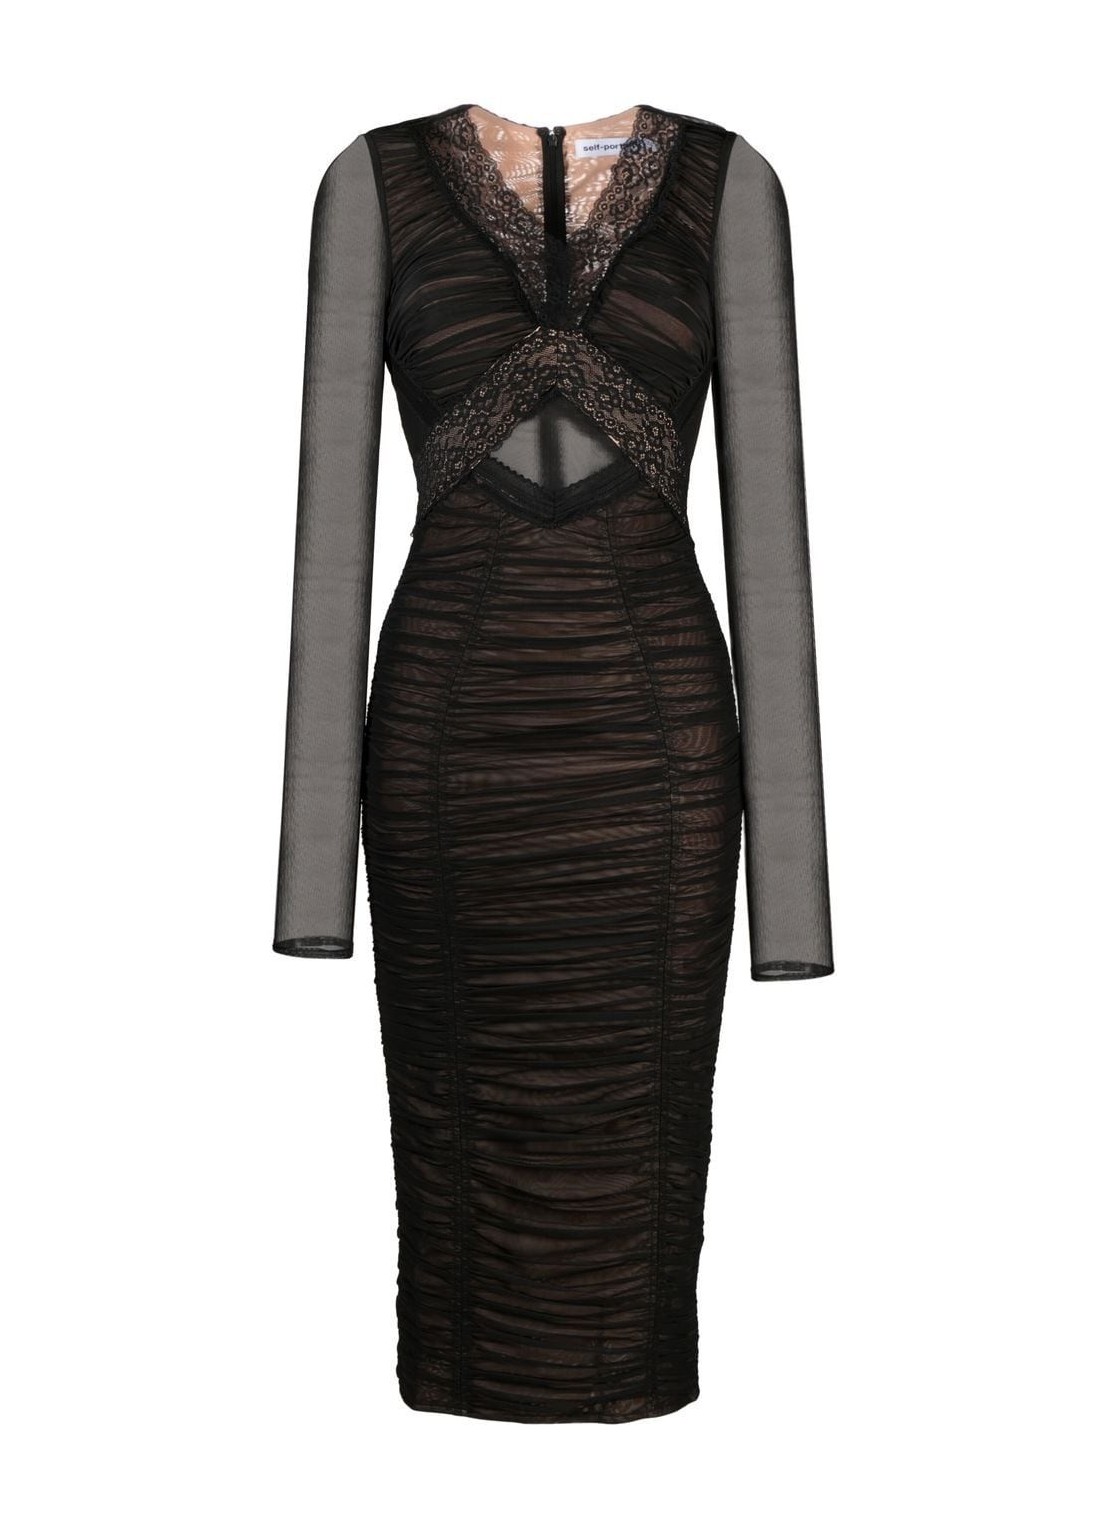 Vestido self-portrait dress woman black mesh midi dress rs23003m black talla 8
 